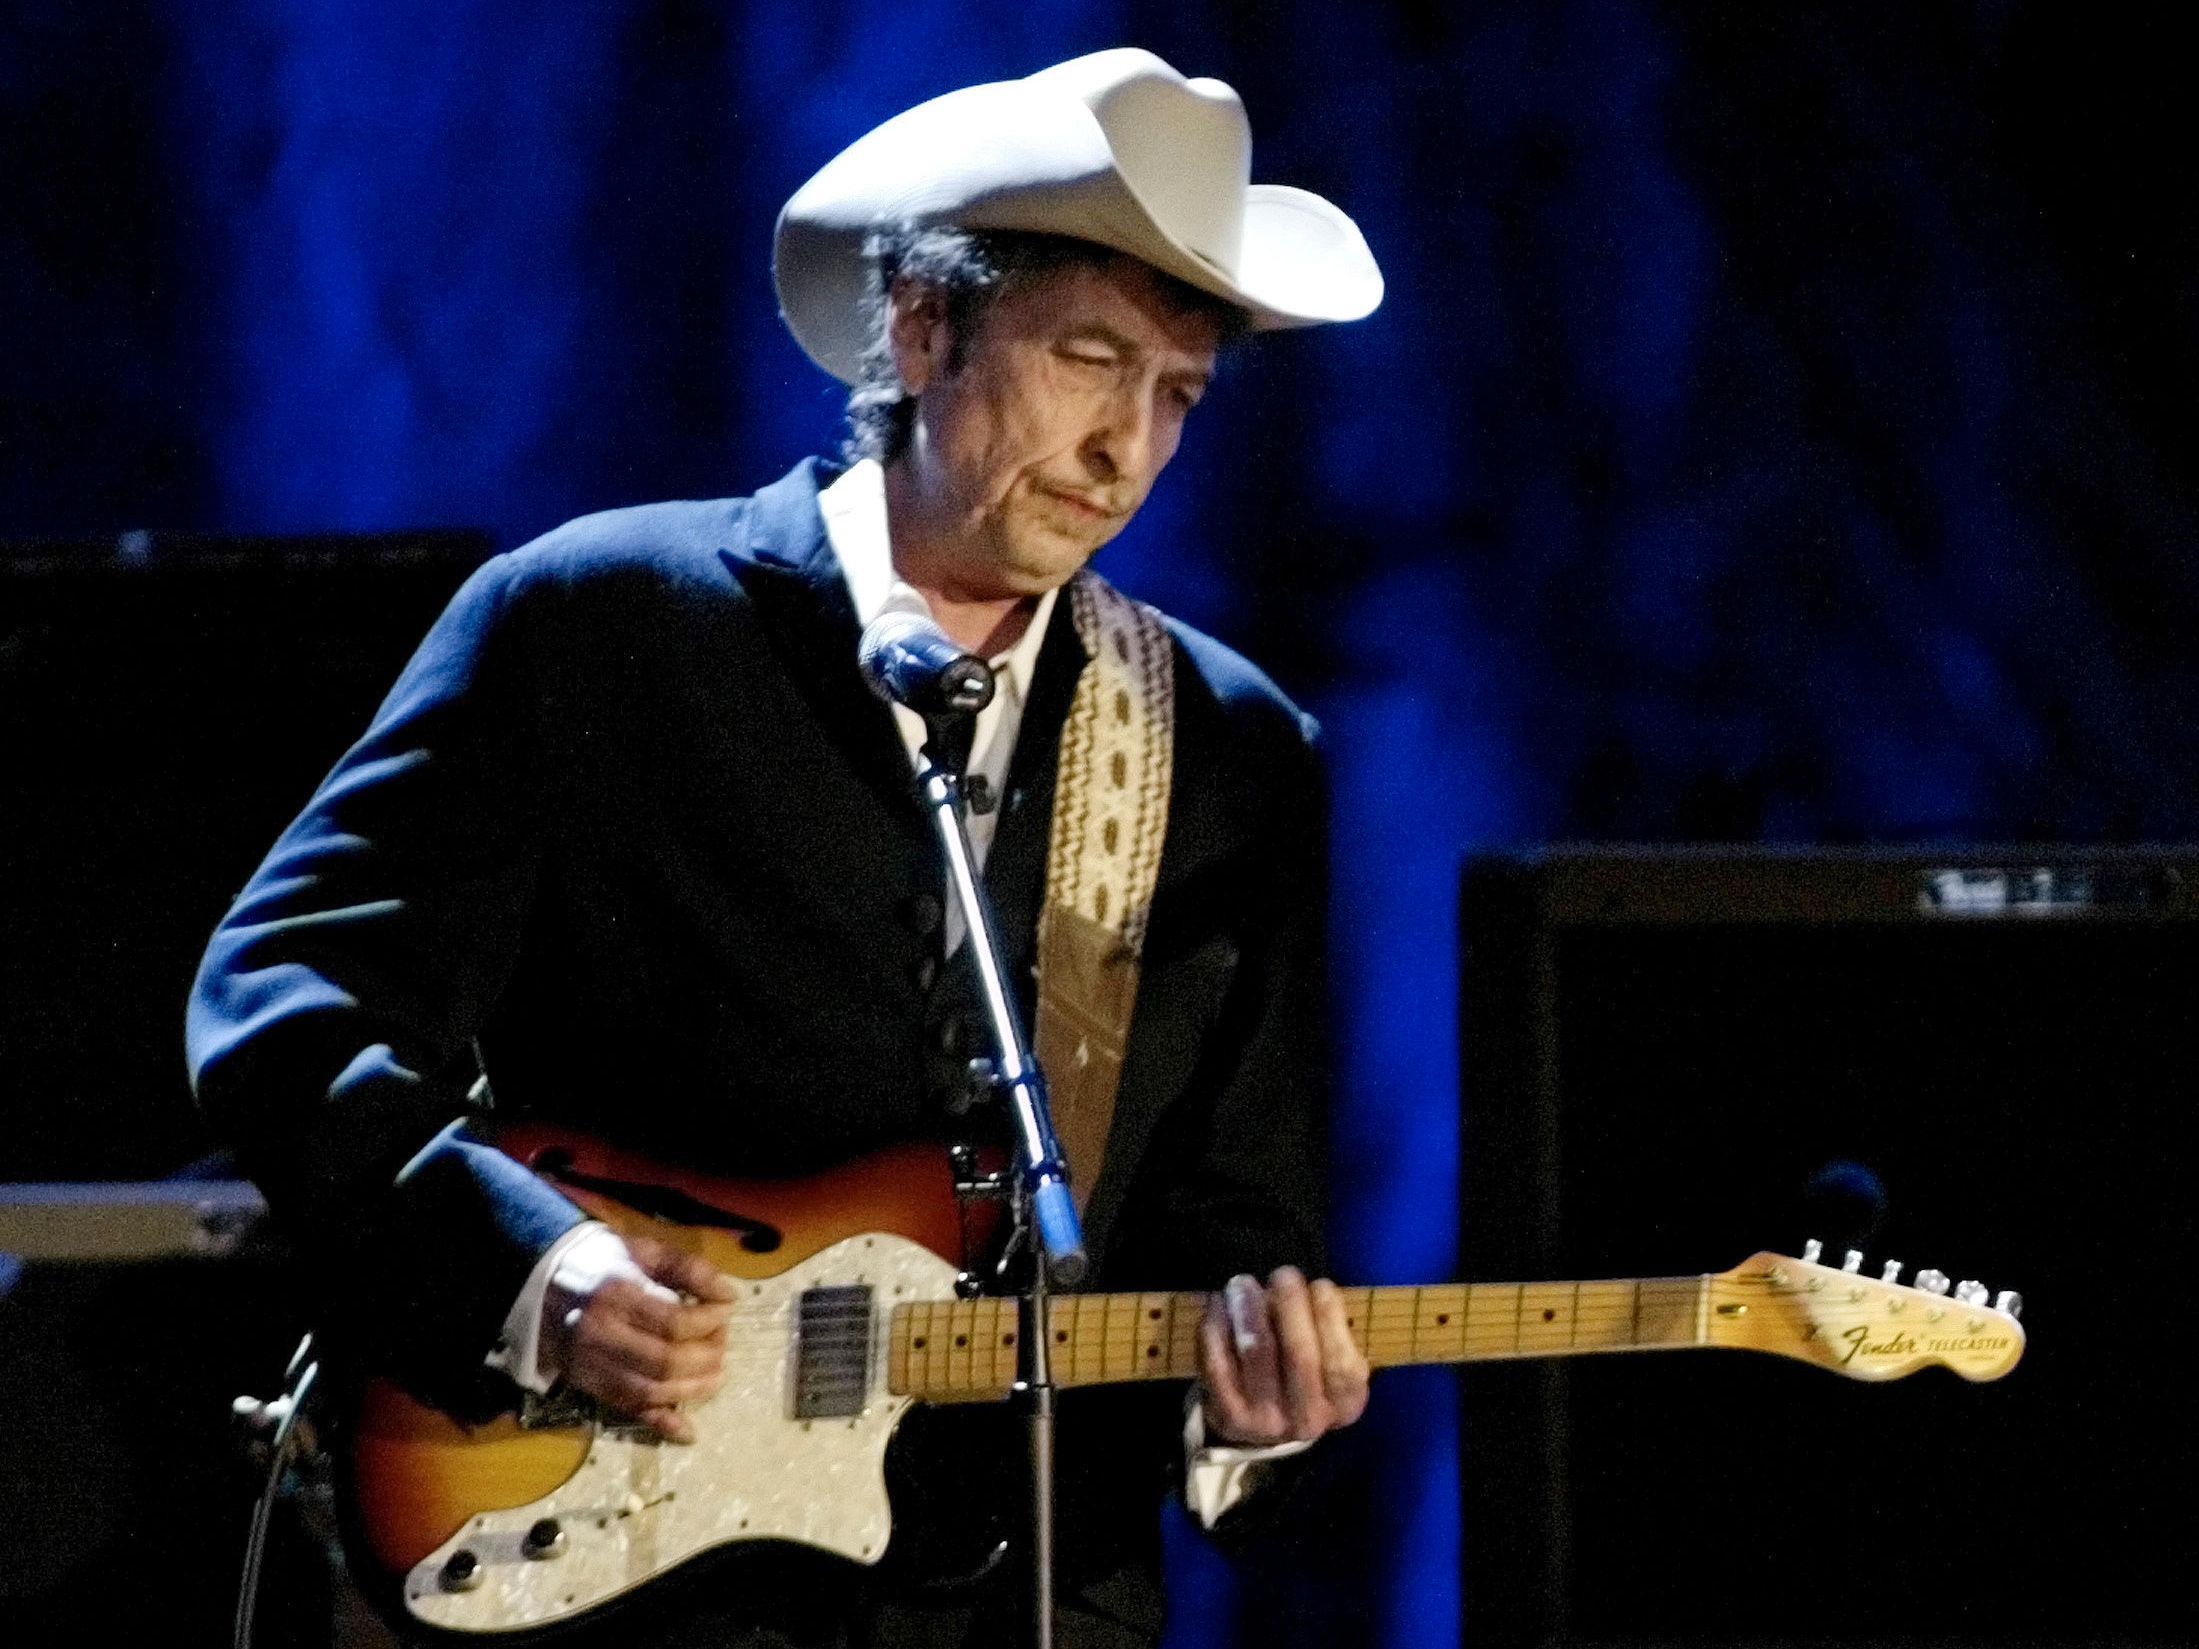 SPILLER PÅ KJENT LÅT: Bob Dylans whiskey-merke heter «Heaven's Door», og spiller på artistens kjente låt «Knocking on Heaven's Door». Her i 2004. Foto: Reuters/Rob Galbraith/File Photo